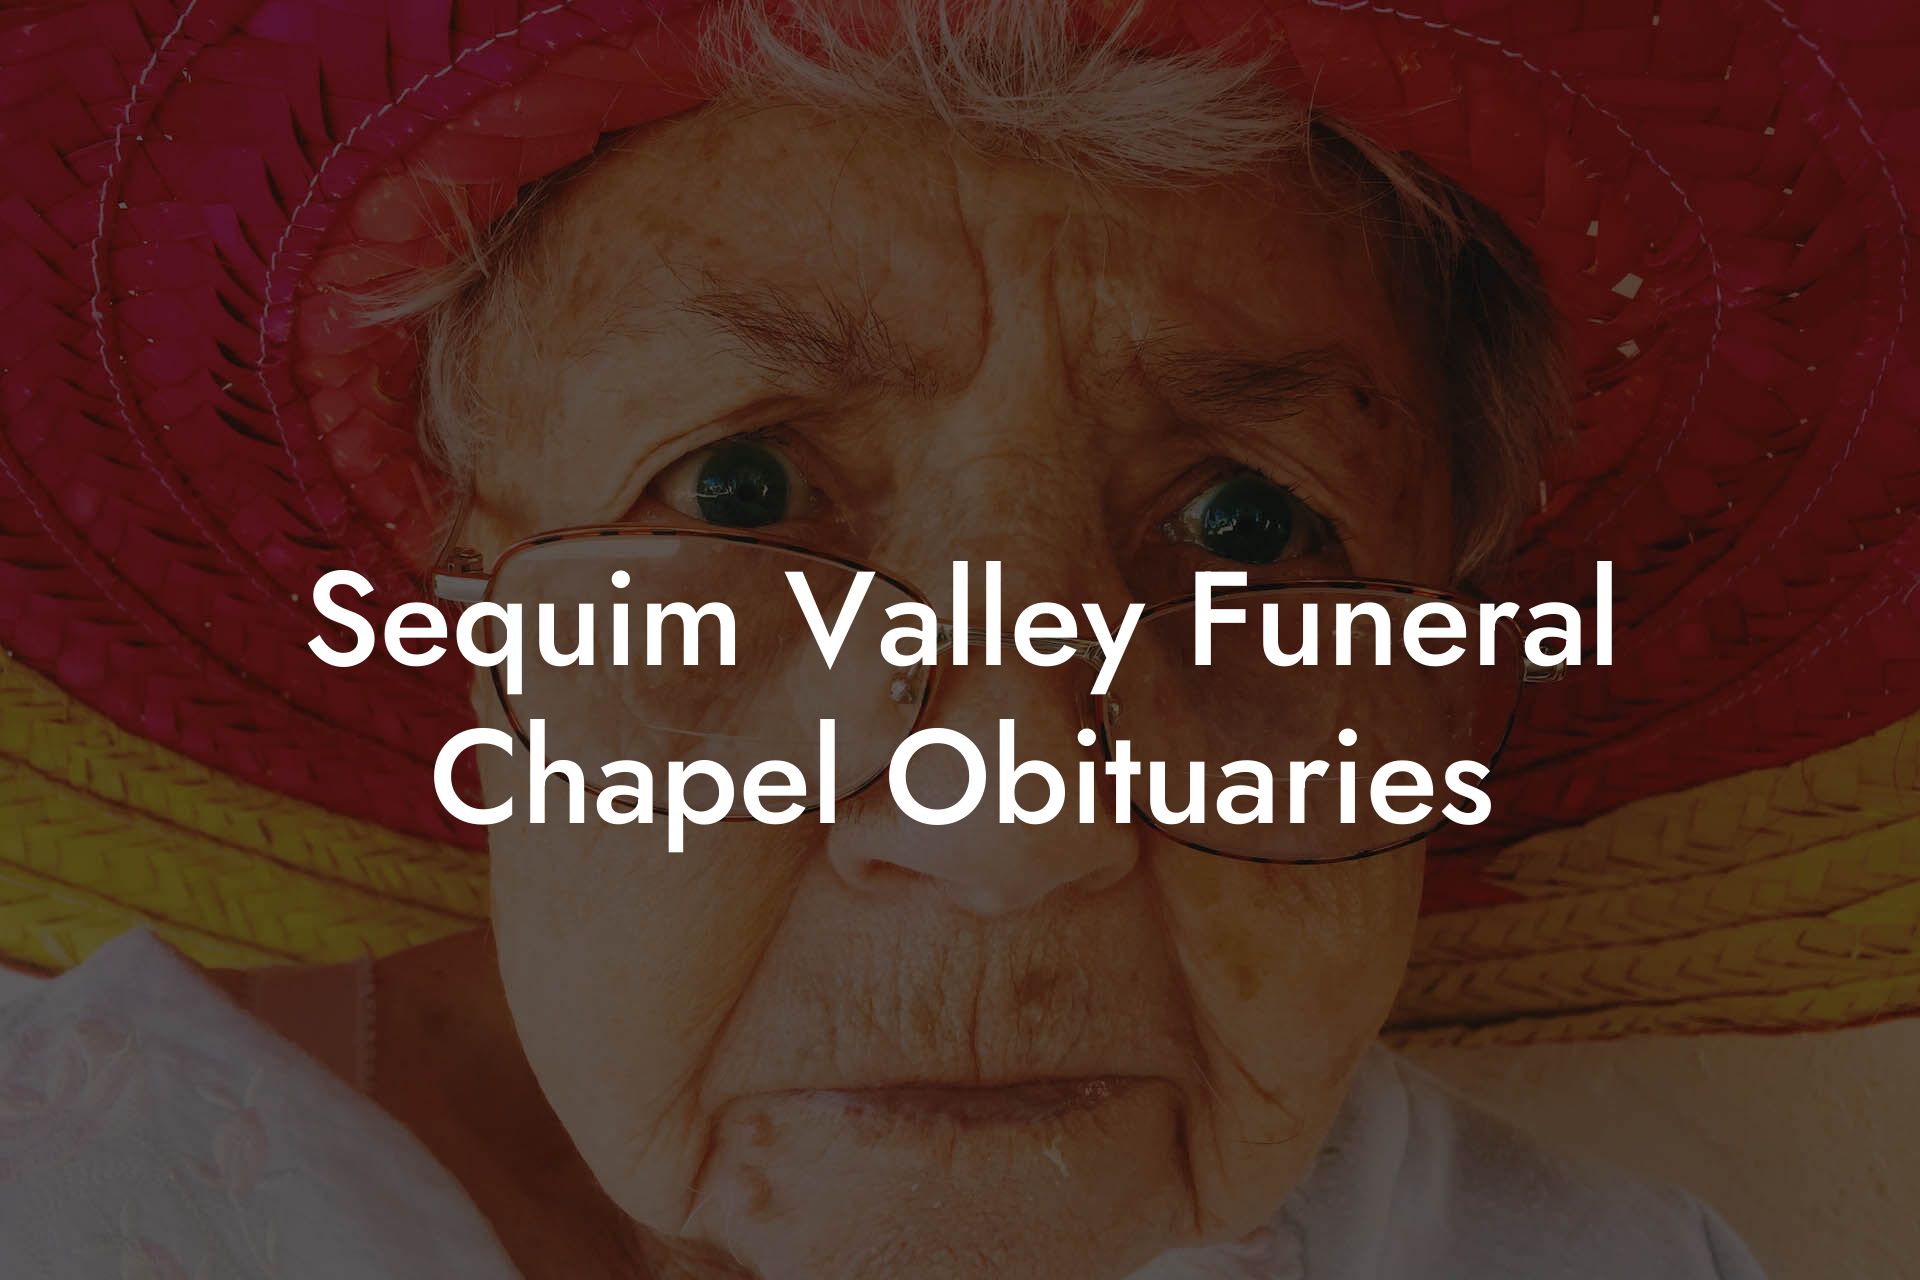 Sequim Valley Funeral Chapel Obituaries